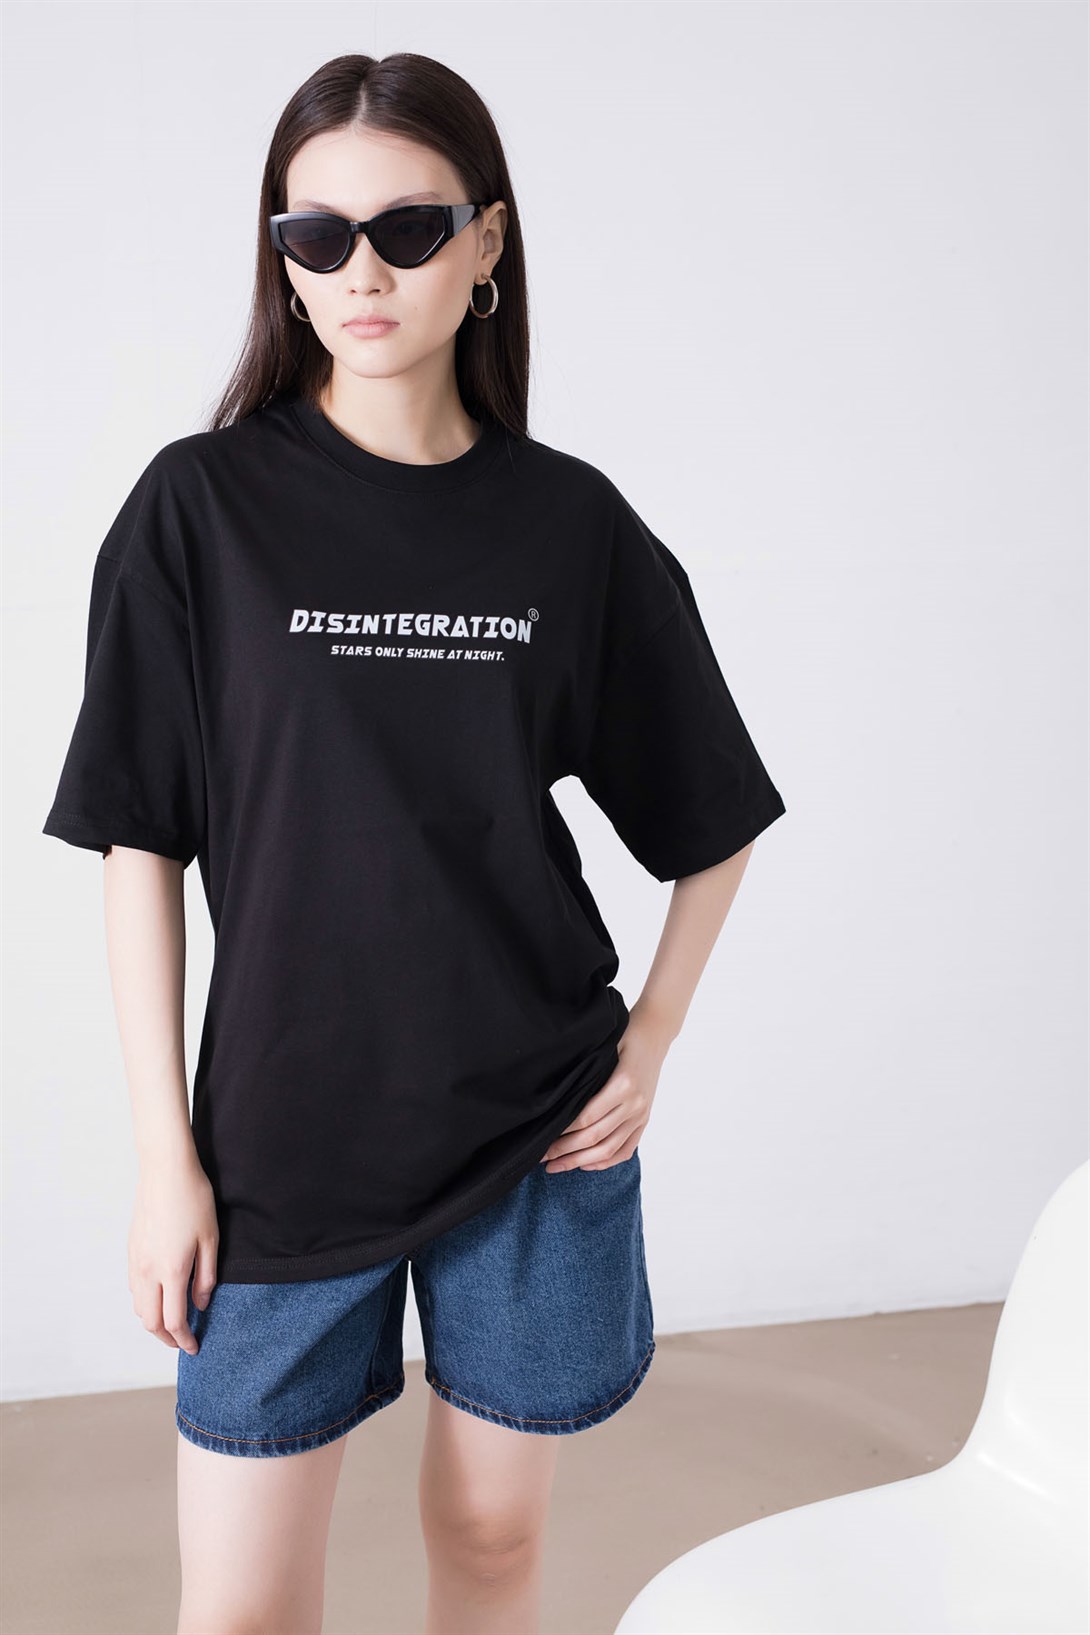 Trendiz Unisex Disintegration Siyah Tshirt